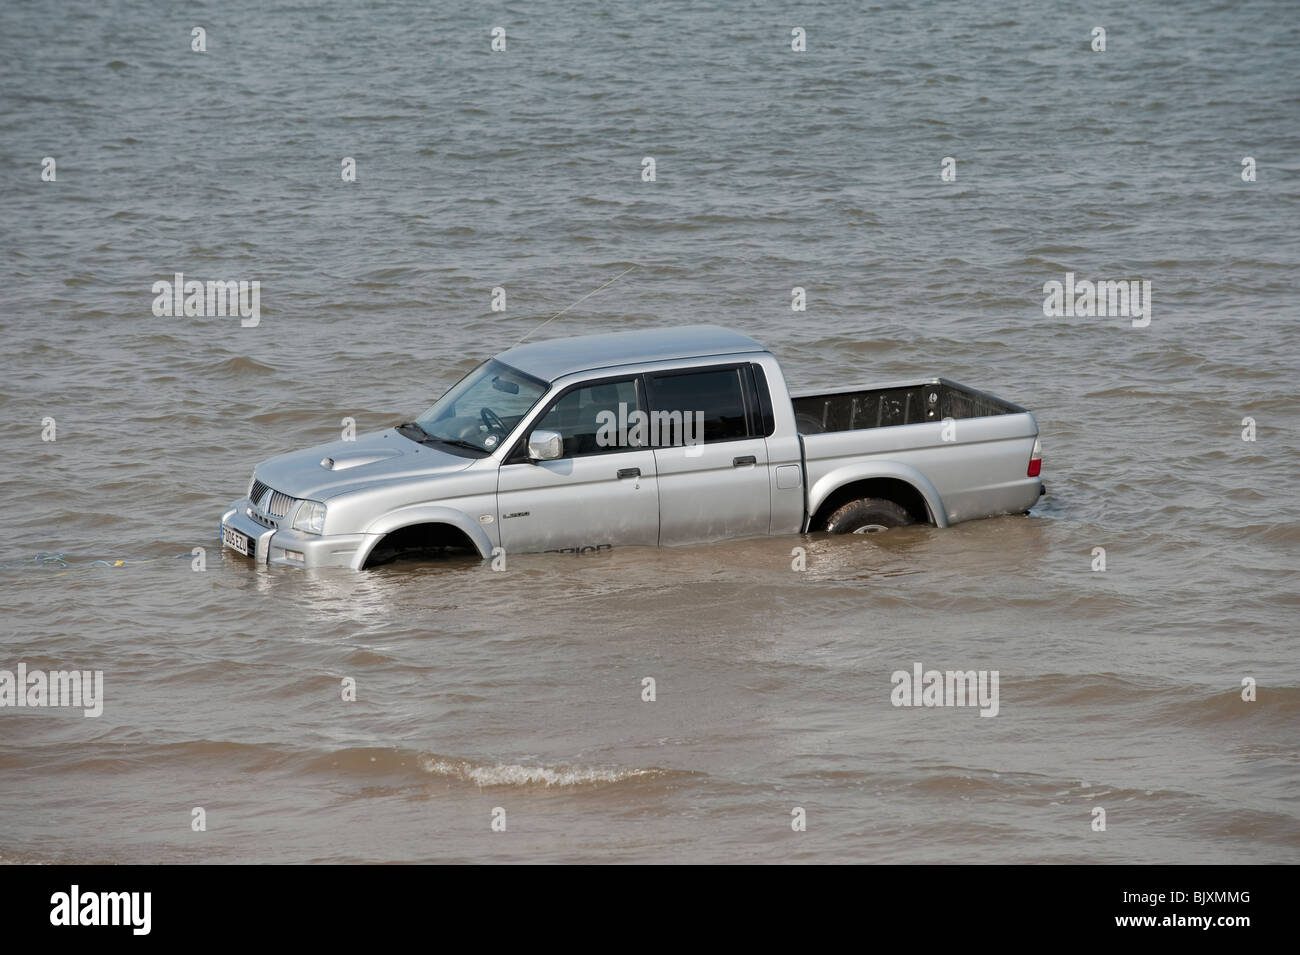 Auto / carrello / SUV bloccato in morbida sabbia sulla spiaggia con marea Foto Stock